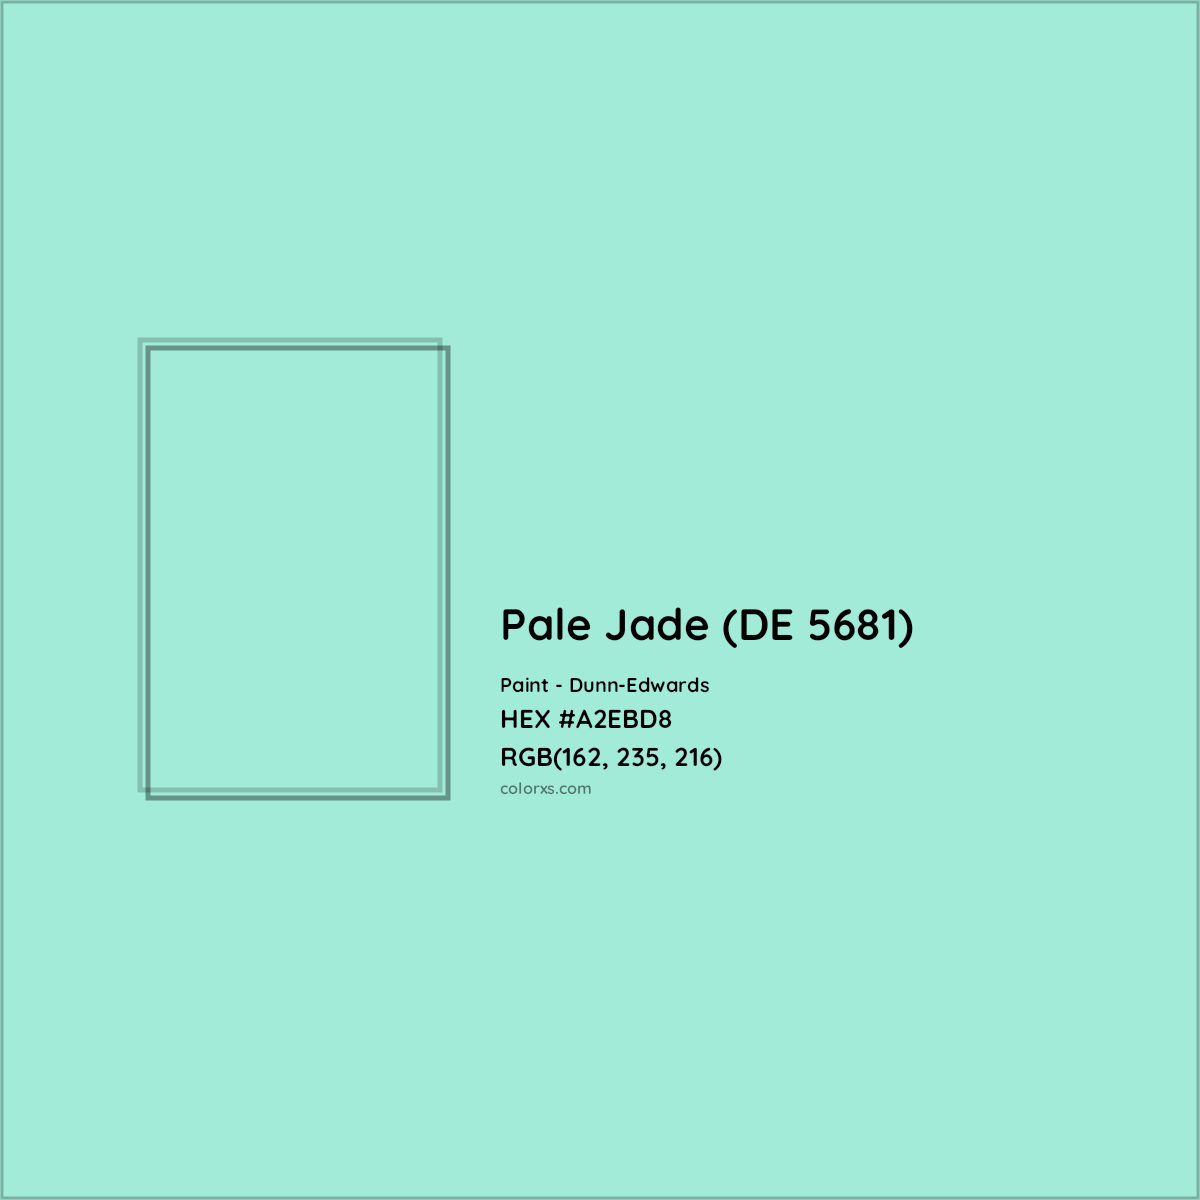 HEX #A2EBD8 Pale Jade (DE 5681) Paint Dunn-Edwards - Color Code